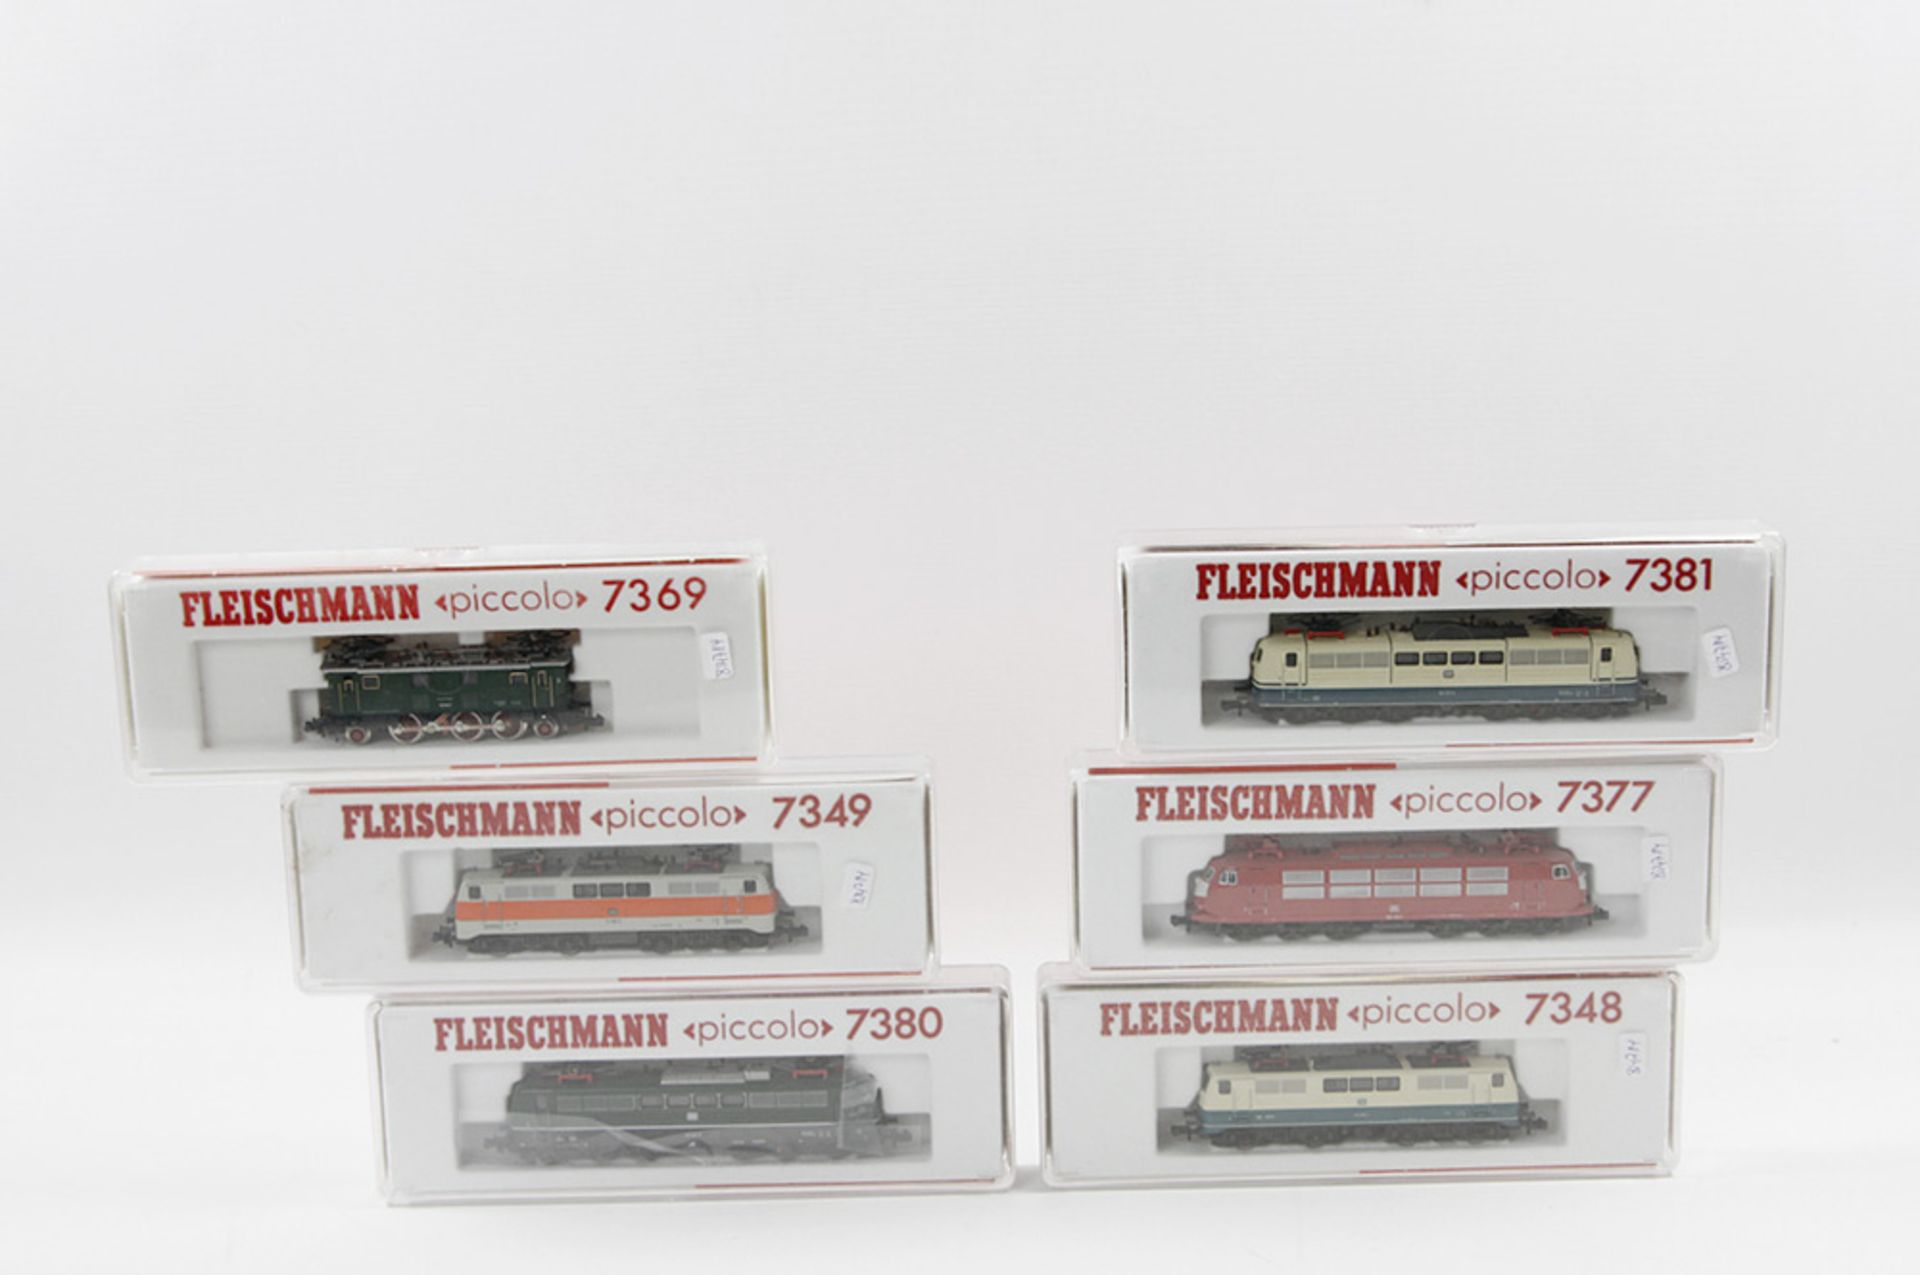 FLEISCHMANN "piccolo" sechs Lokomotiven 7381, 7377, 7349, 7369, 7348 und 7380, Spur N, bestehend aus